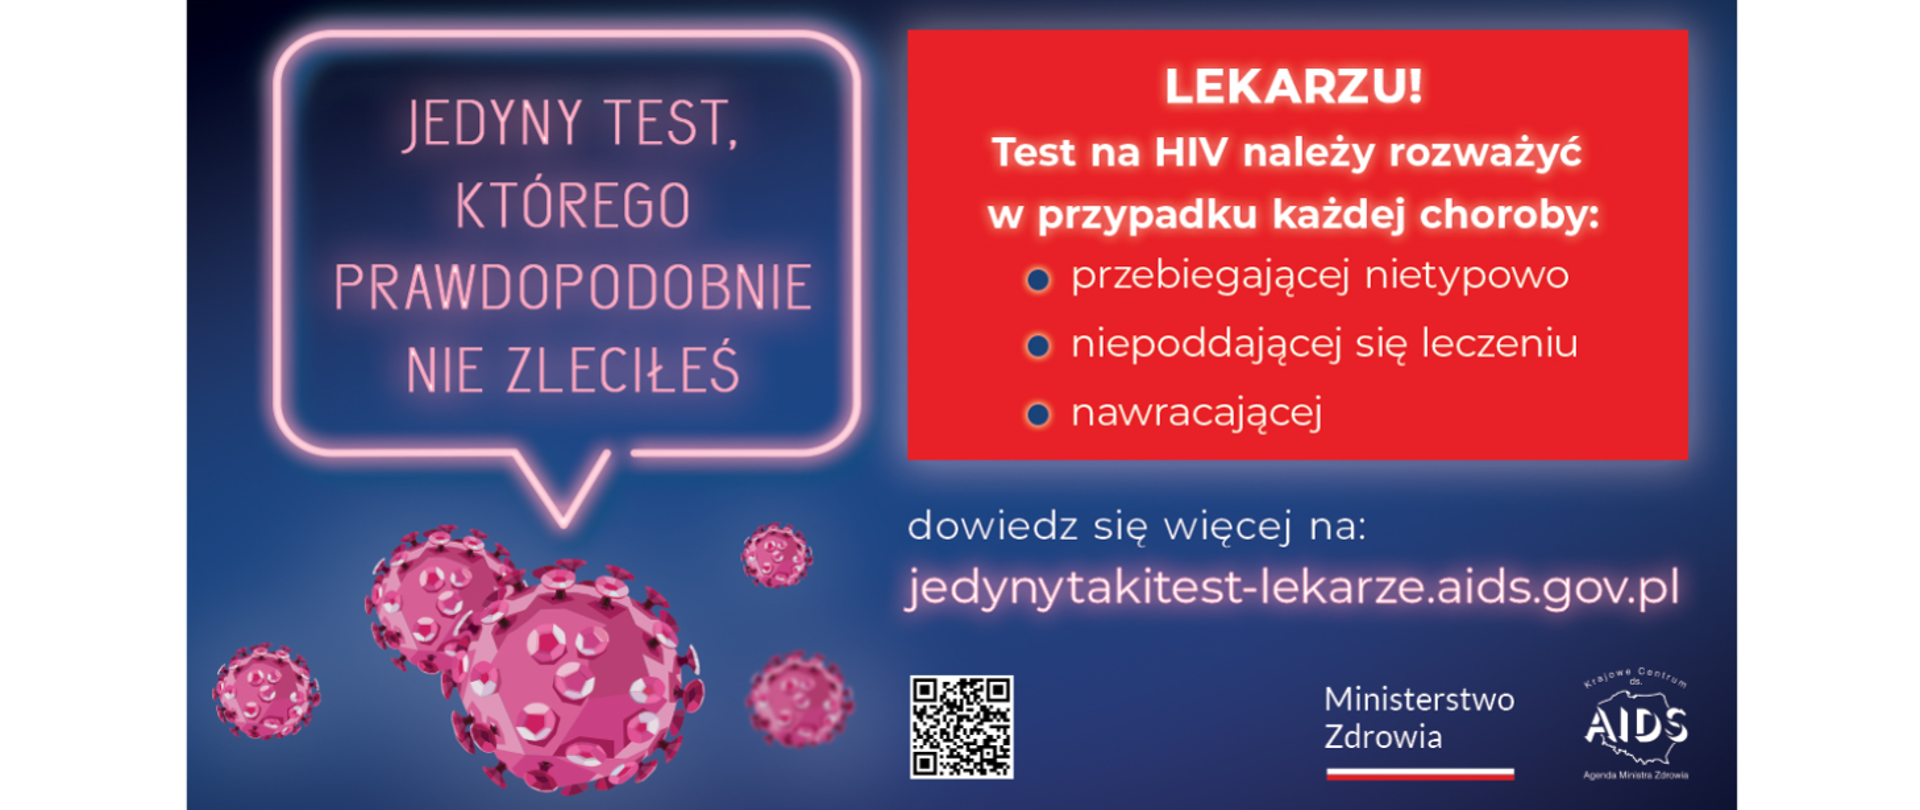 Jedyny taki test którego prawdopodobnie nie zleciłeś. Lekarzu! Test na HIV należy rozważyć w przypadku każdej choroby: przebiegającej nietypowo, niepoddającej się leczeniu, nawracającej. Dowiedz się więcej: jedynytakitest-lekarze.aids.gov.pl 